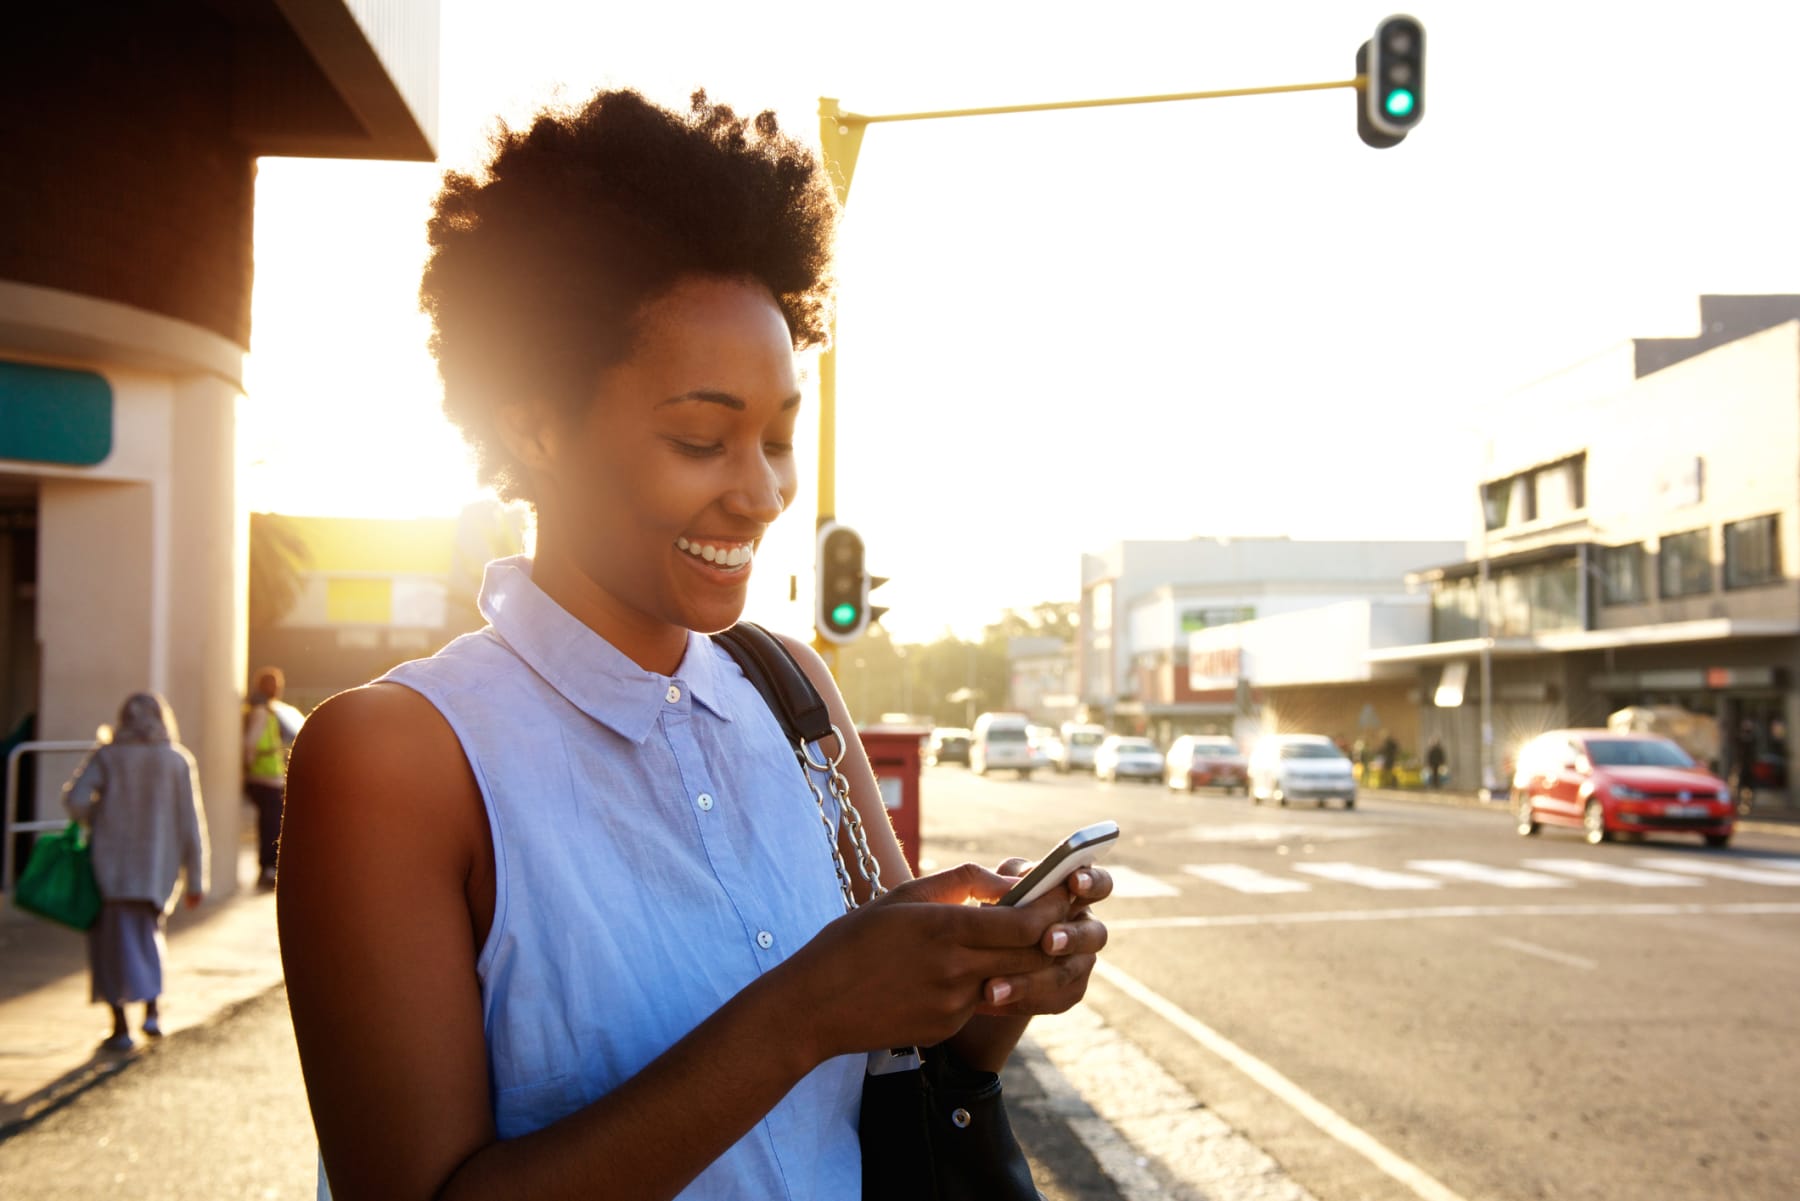 Black woman uses phone on street.